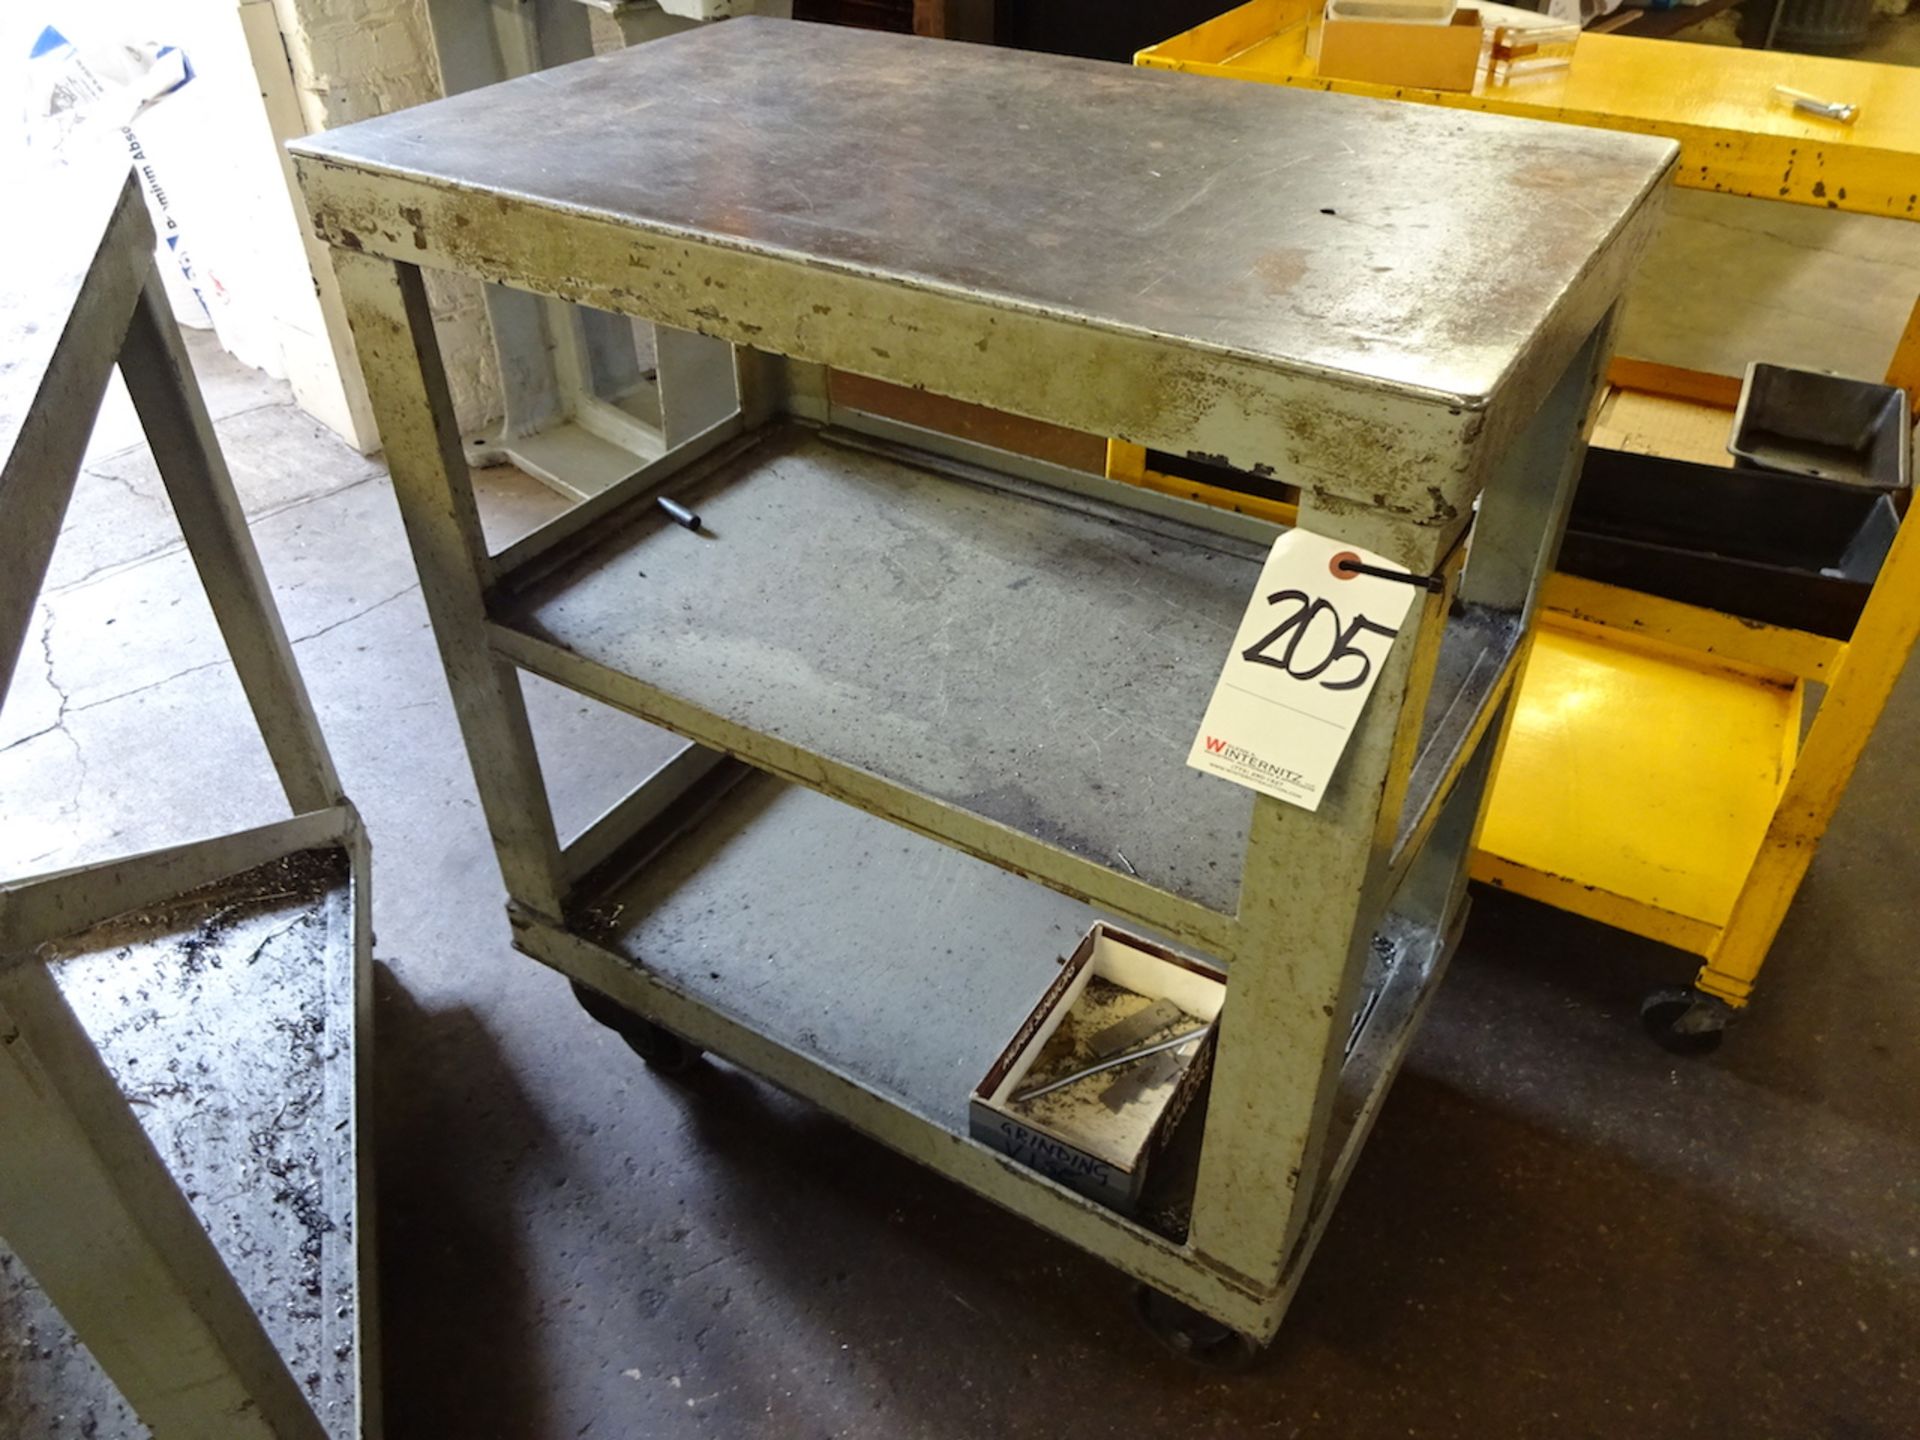 29 in. x 18 in. Steel Shop Cart